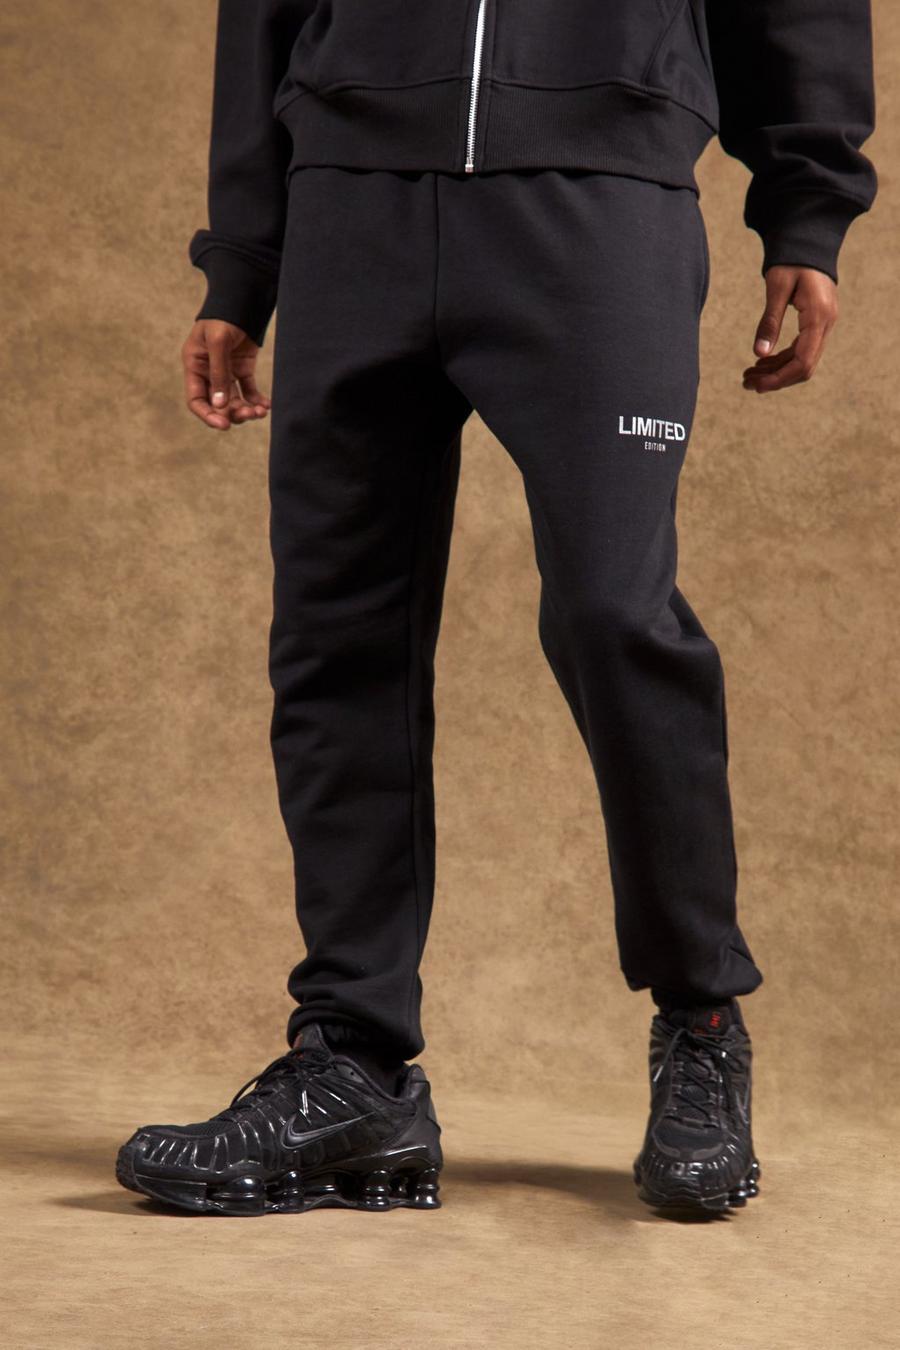 שחור nero מכנסי טרנינג עבים בגזרה רגילה עם כיתוב Limited